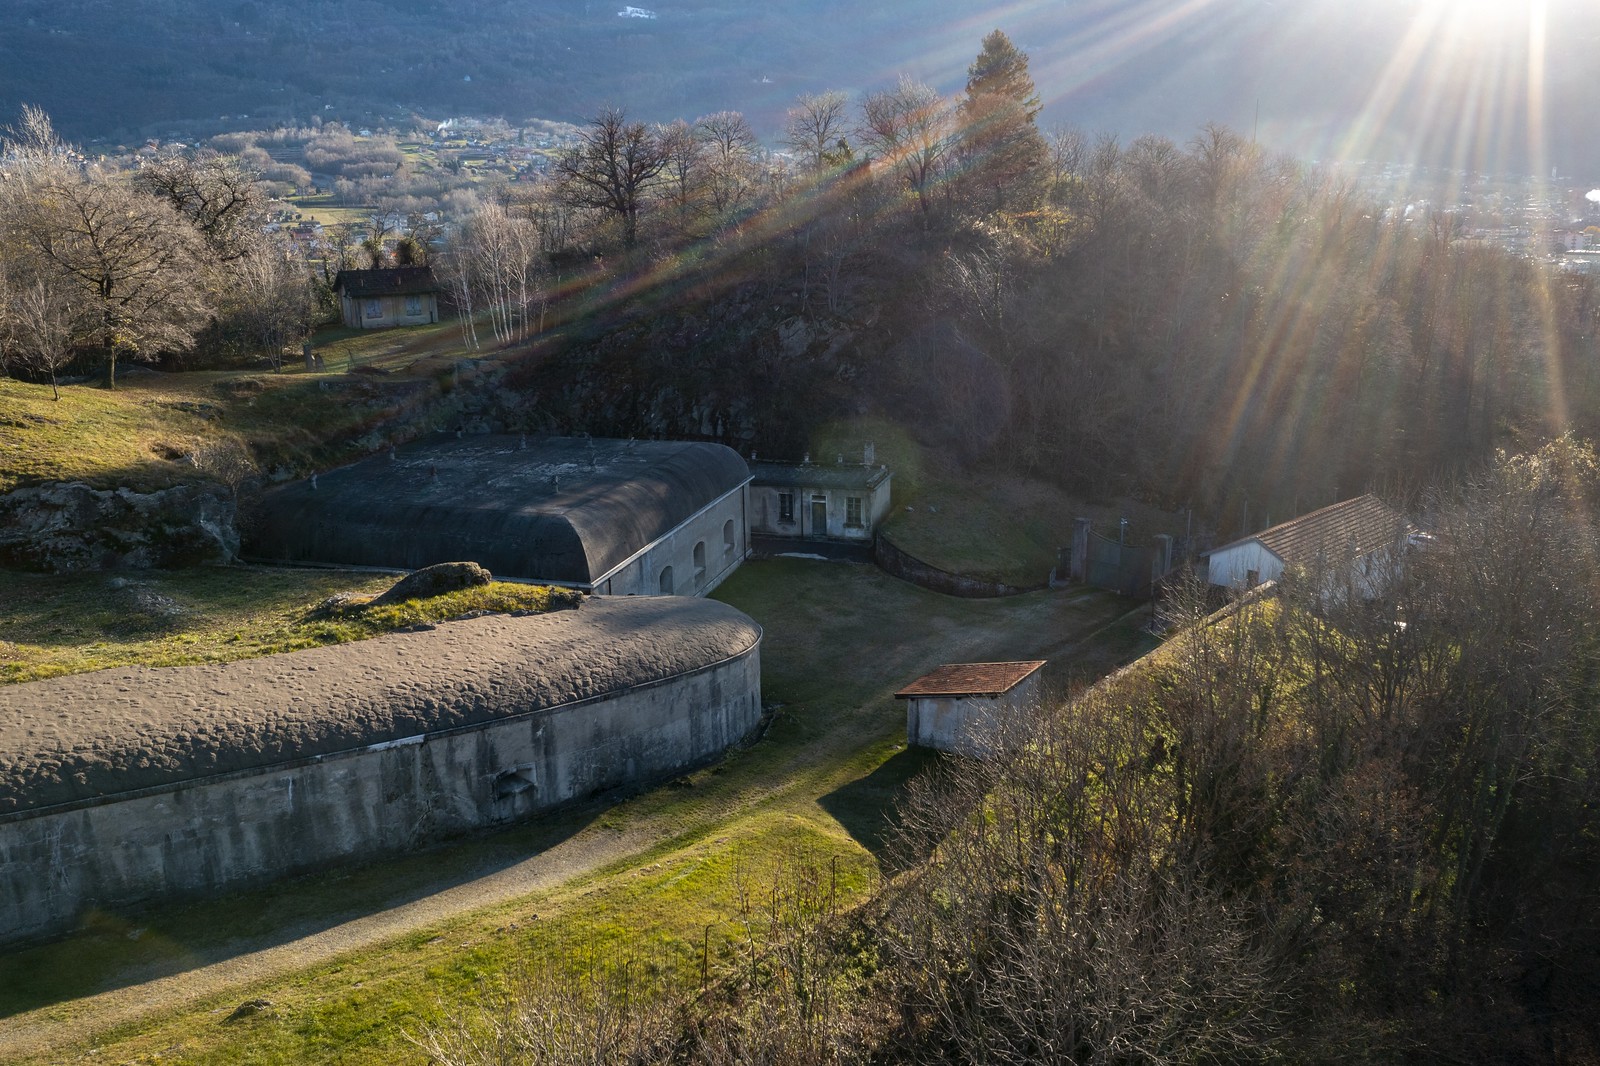 Forte Montecchio Nord